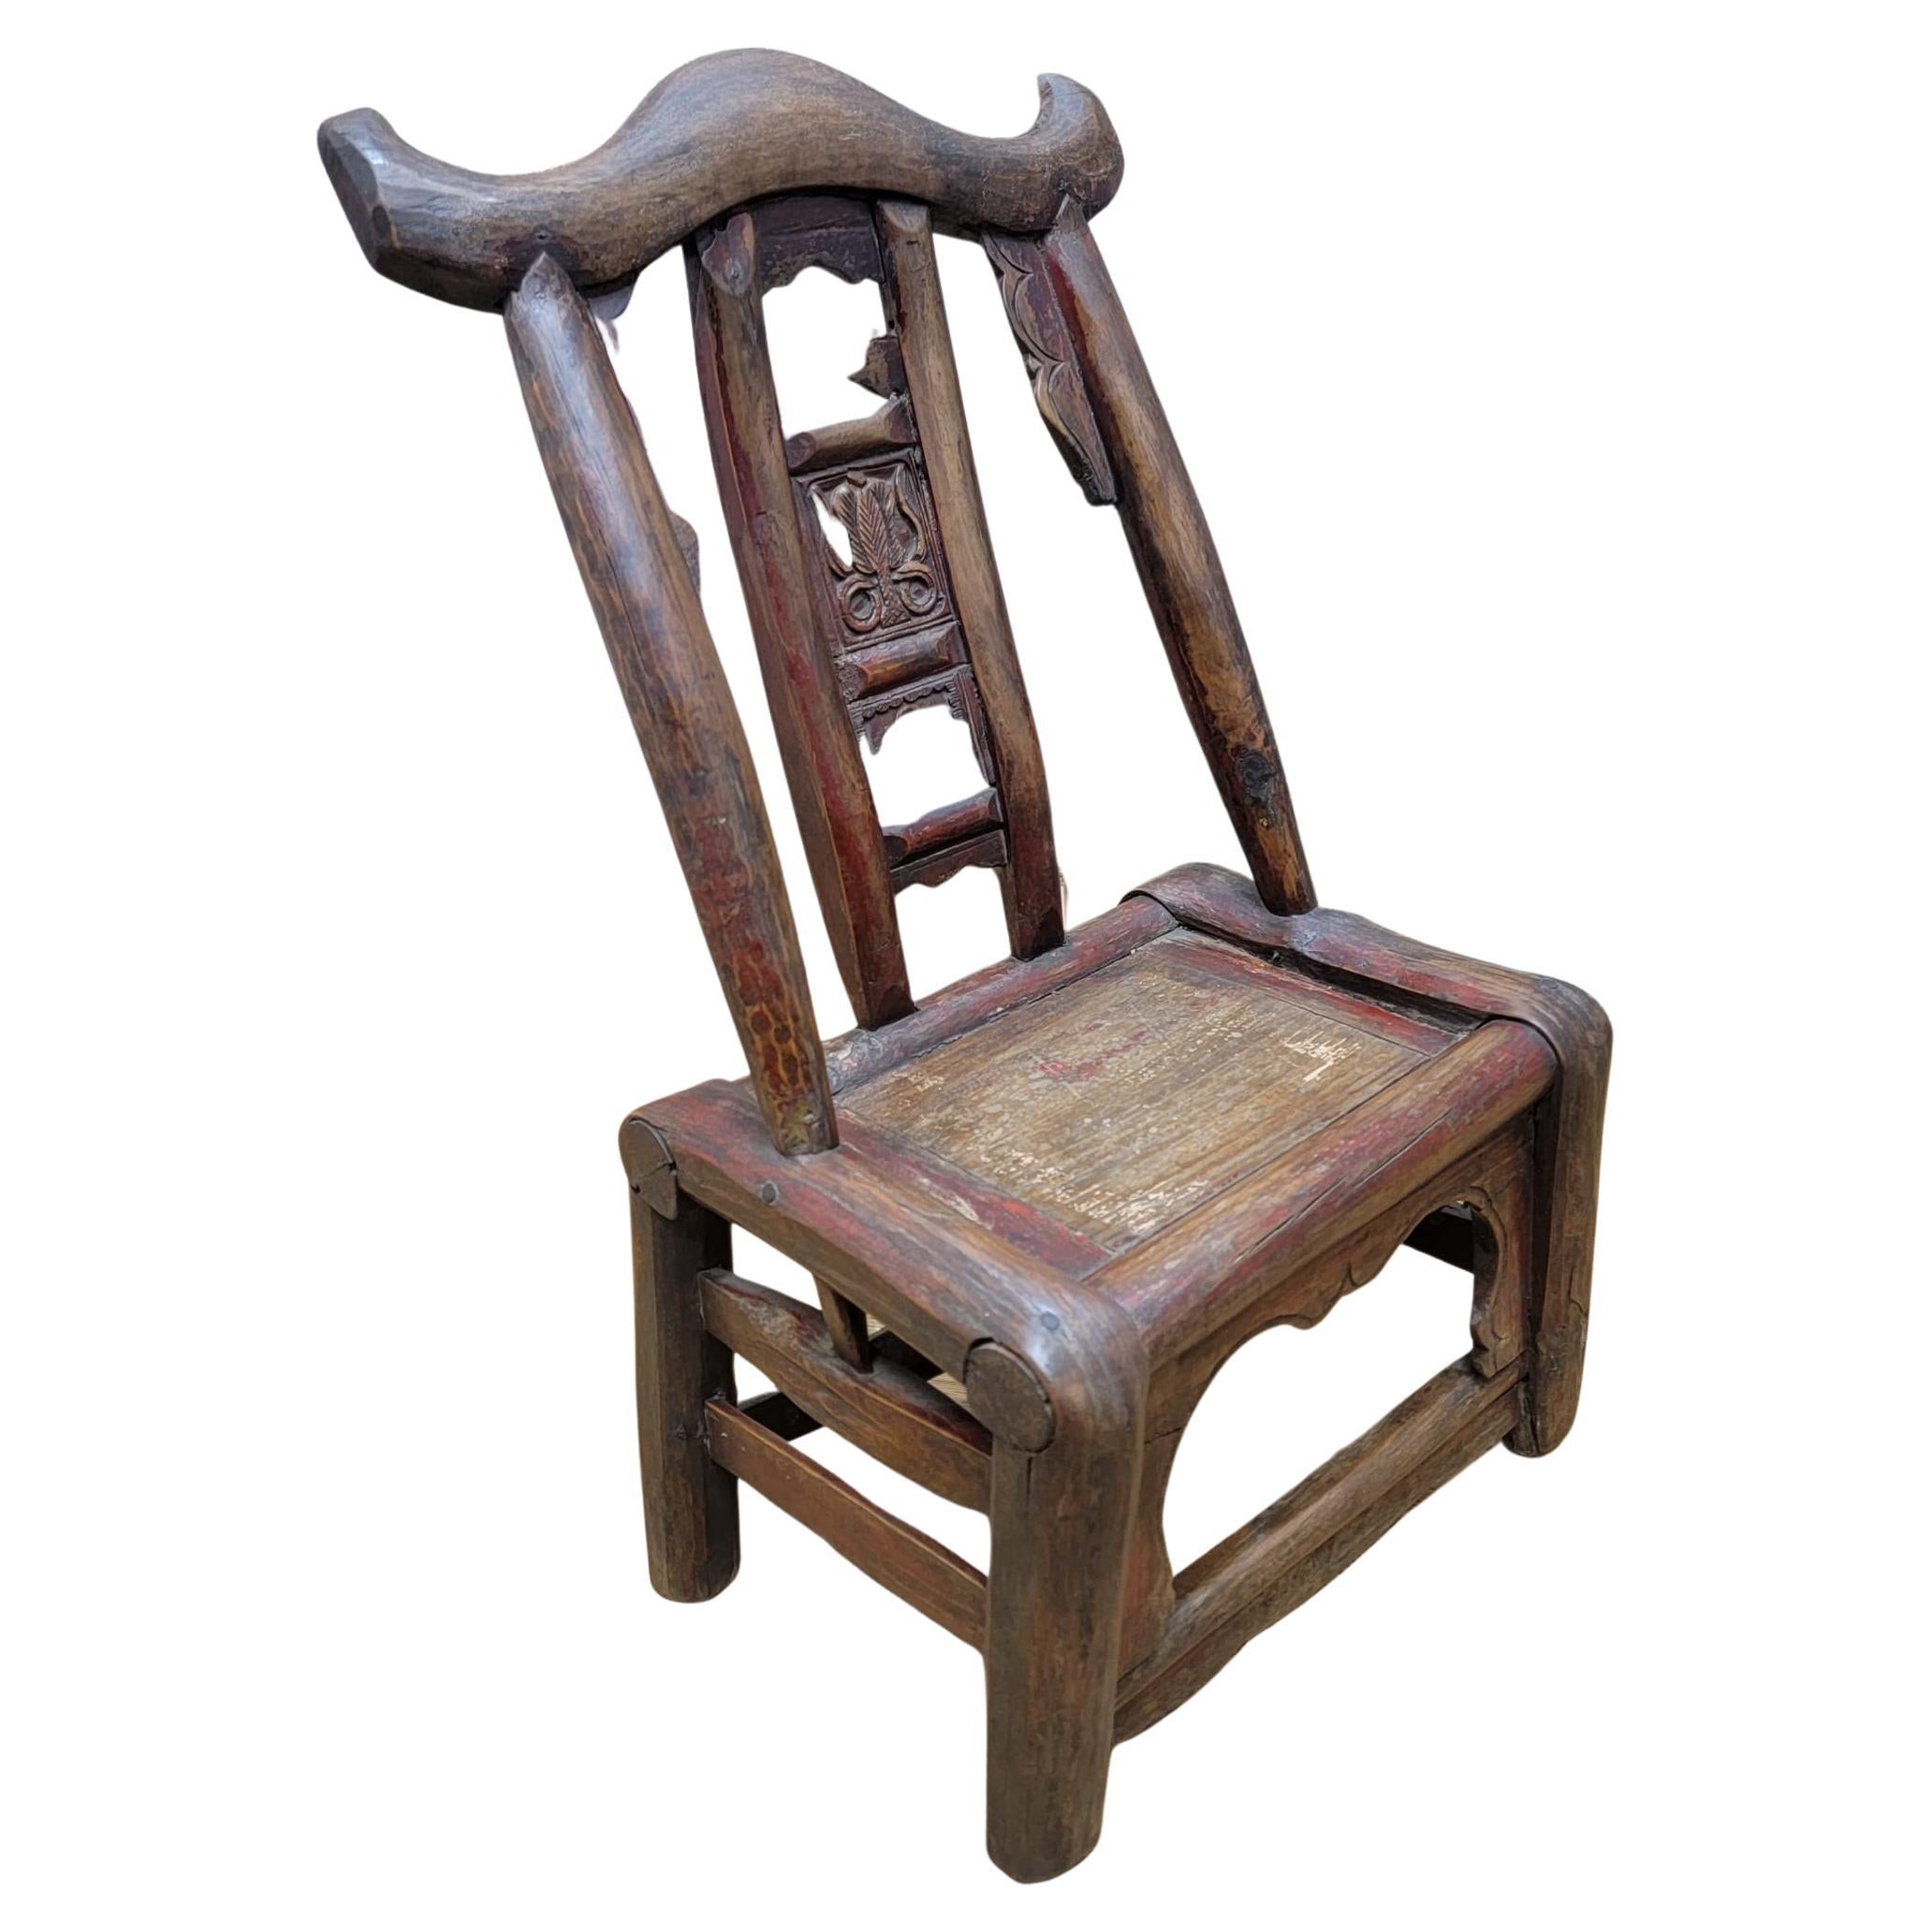  Ancienne chaise d'enfant en orme sculptée à la main de la province de Shanxi